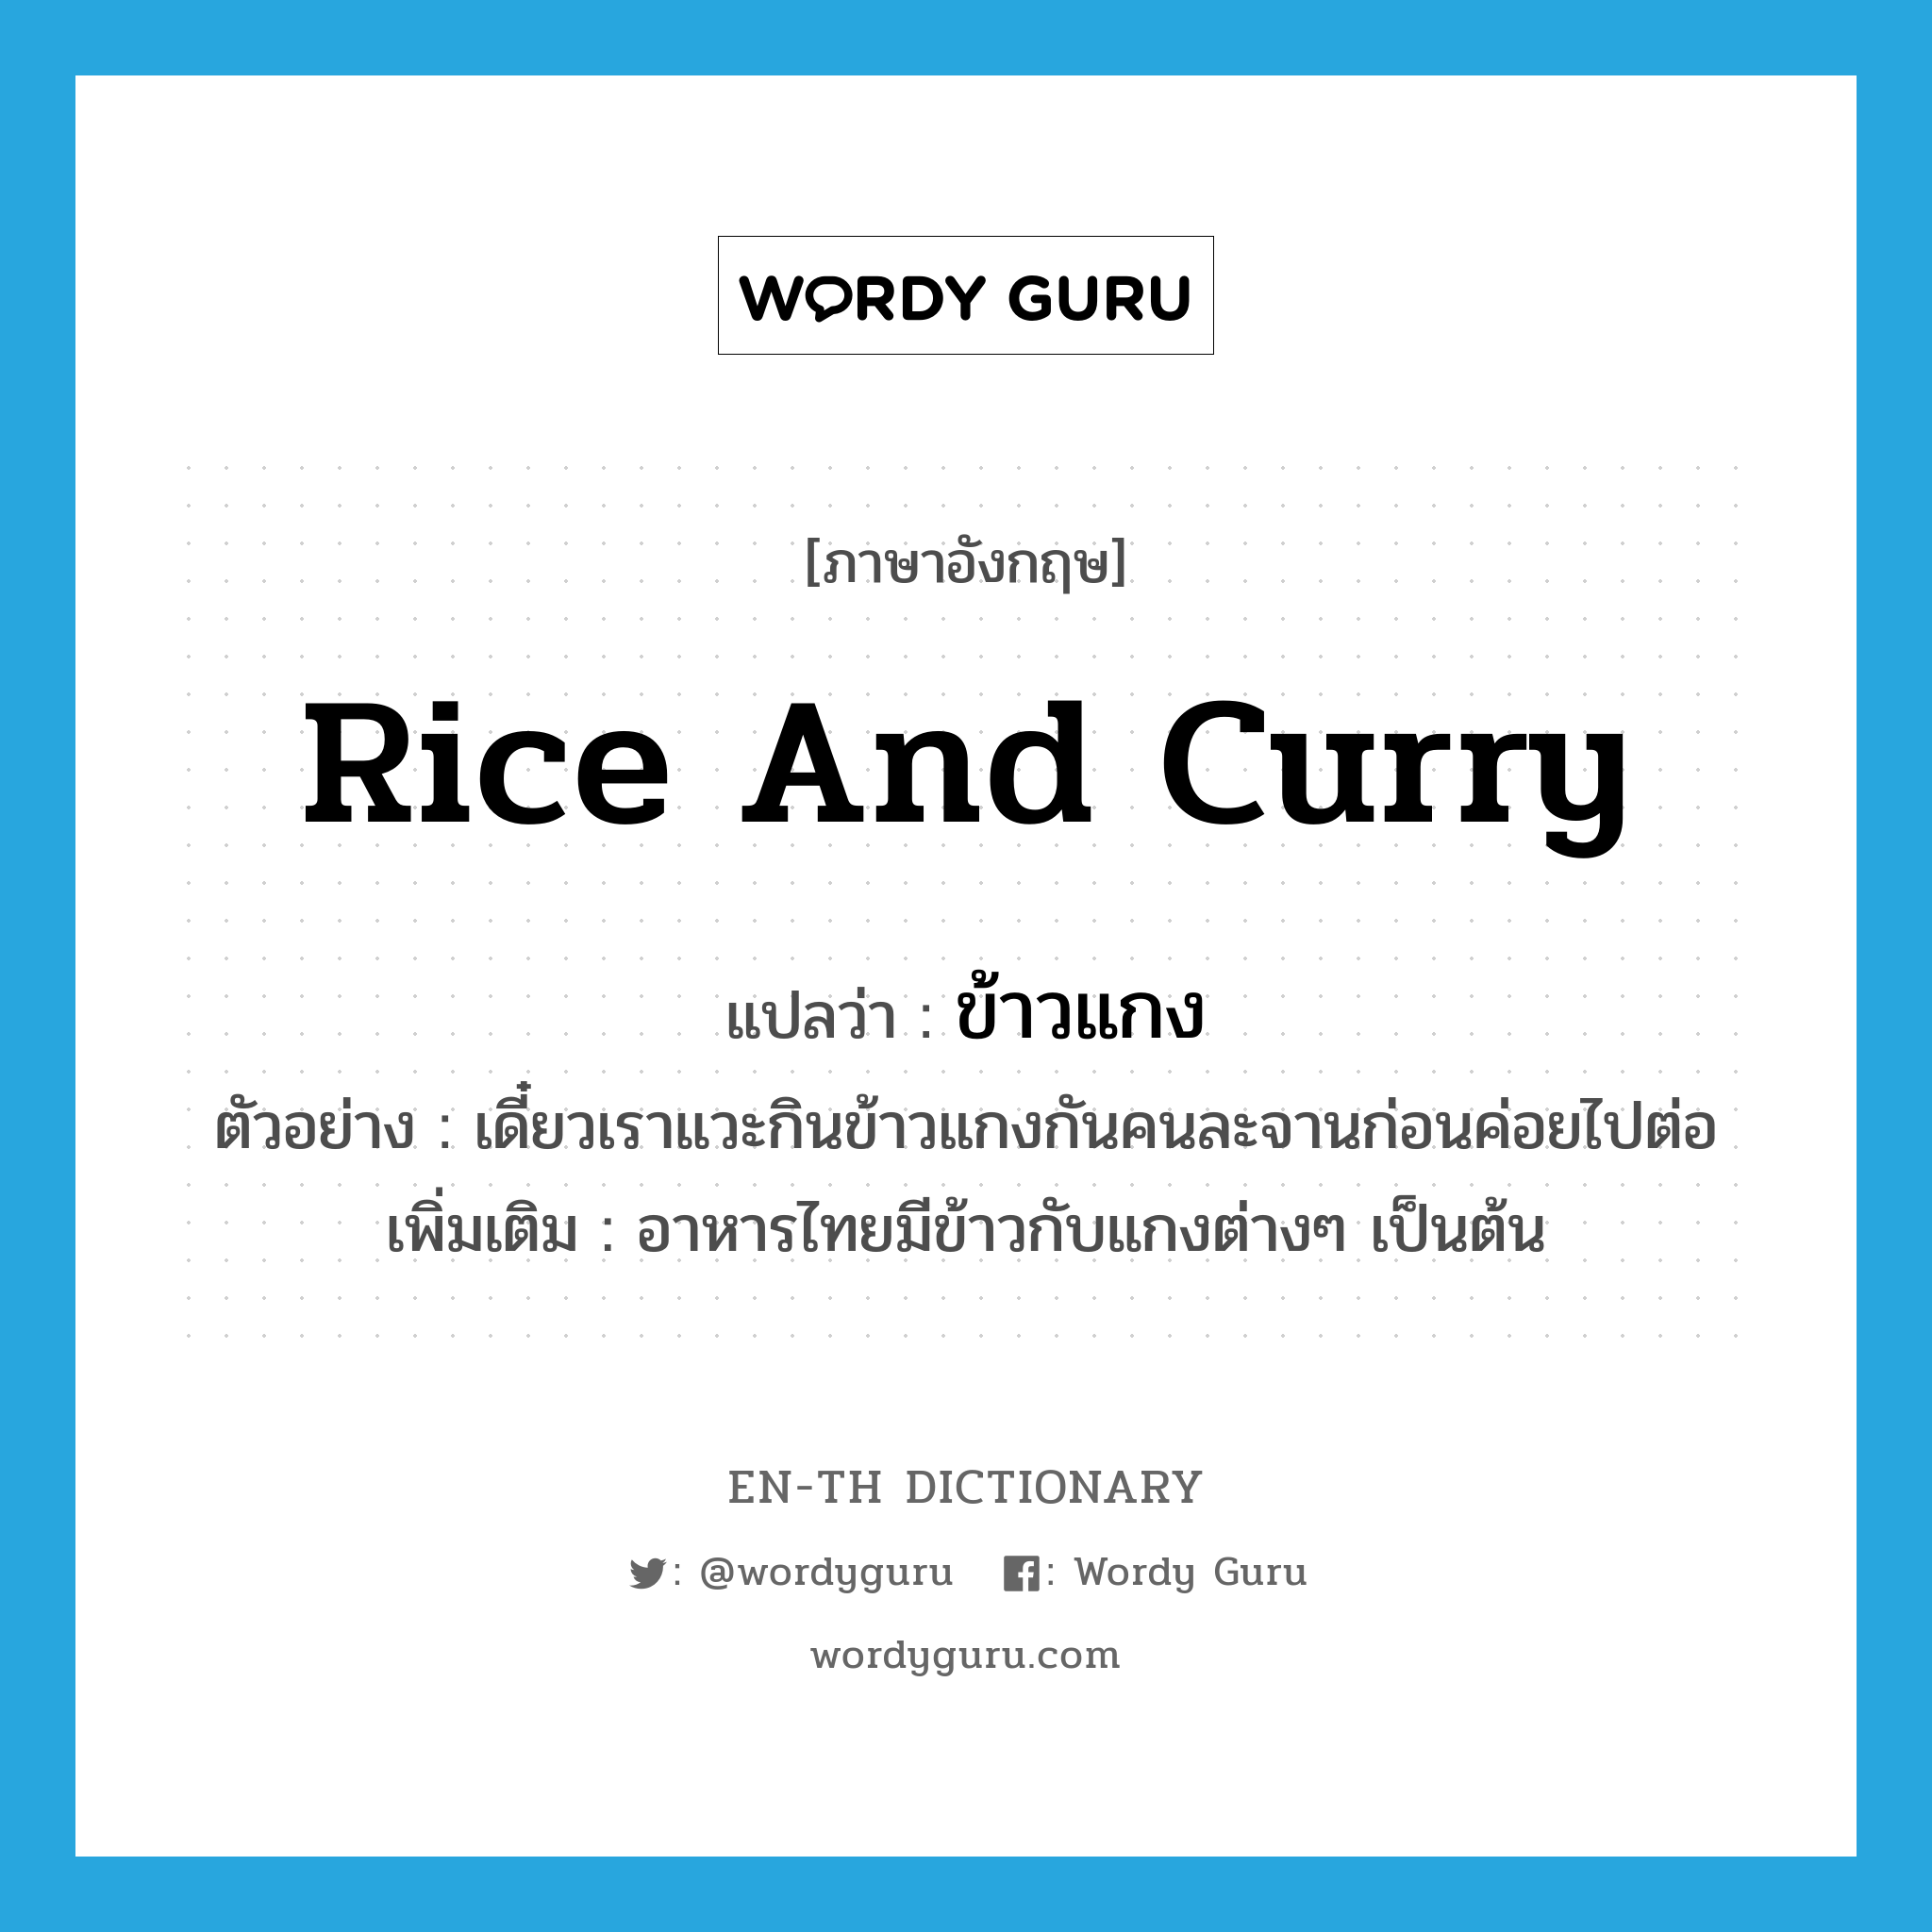 rice and curry แปลว่า?, คำศัพท์ภาษาอังกฤษ rice and curry แปลว่า ข้าวแกง ประเภท N ตัวอย่าง เดี๋ยวเราแวะกินข้าวแกงกันคนละจานก่อนค่อยไปต่อ เพิ่มเติม อาหารไทยมีข้าวกับแกงต่างๆ เป็นต้น หมวด N